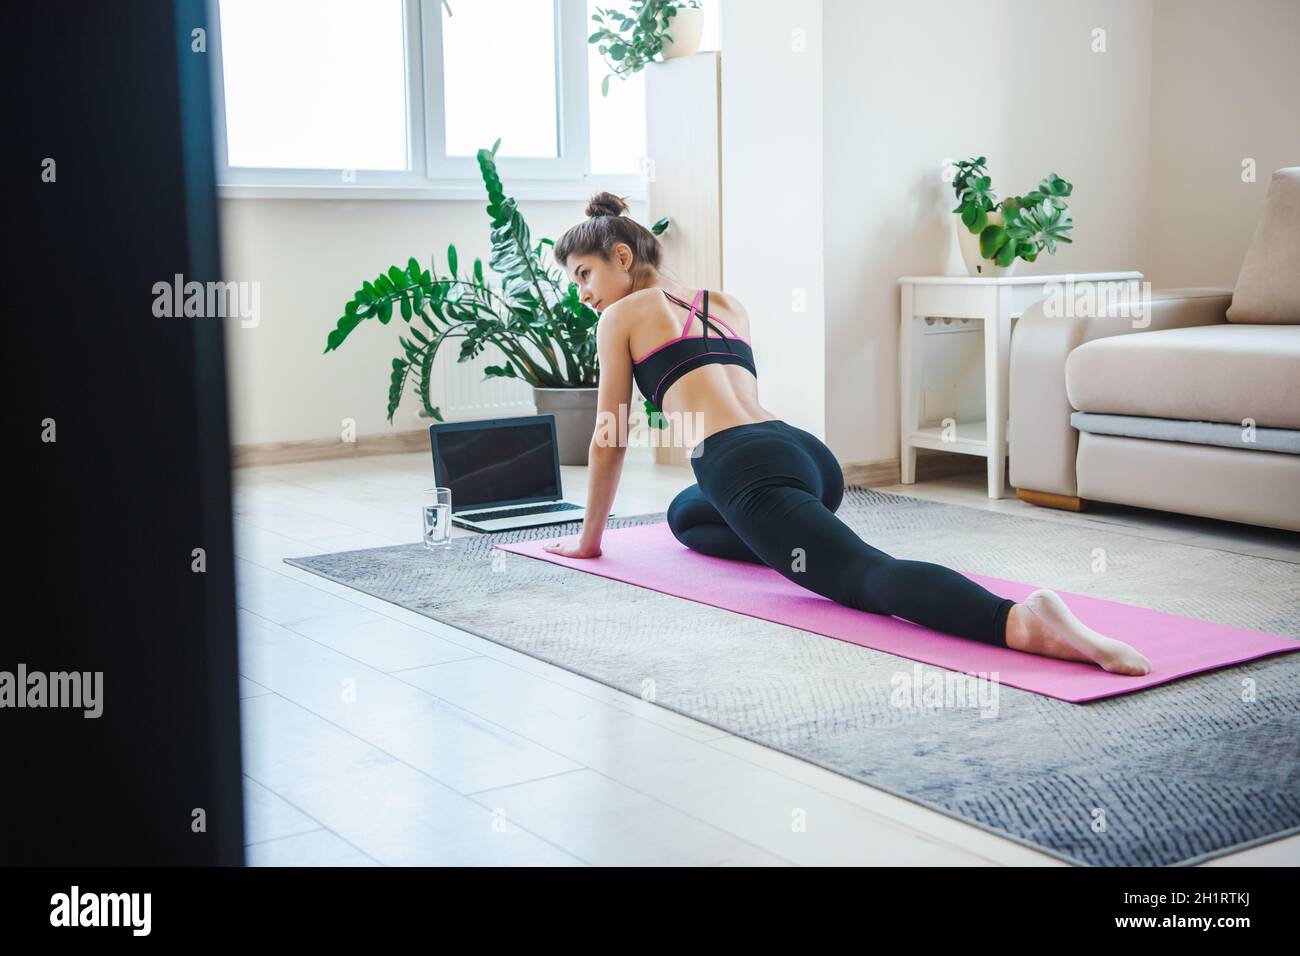 Placez la femme dans des vêtements de sport qui s'étirent les jambes, s'entraîner avec un ordinateur portable, regarder des tutoriels en ligne, pratiquer des pilates sur un tapis de yoga.Restez en forme Banque D'Images